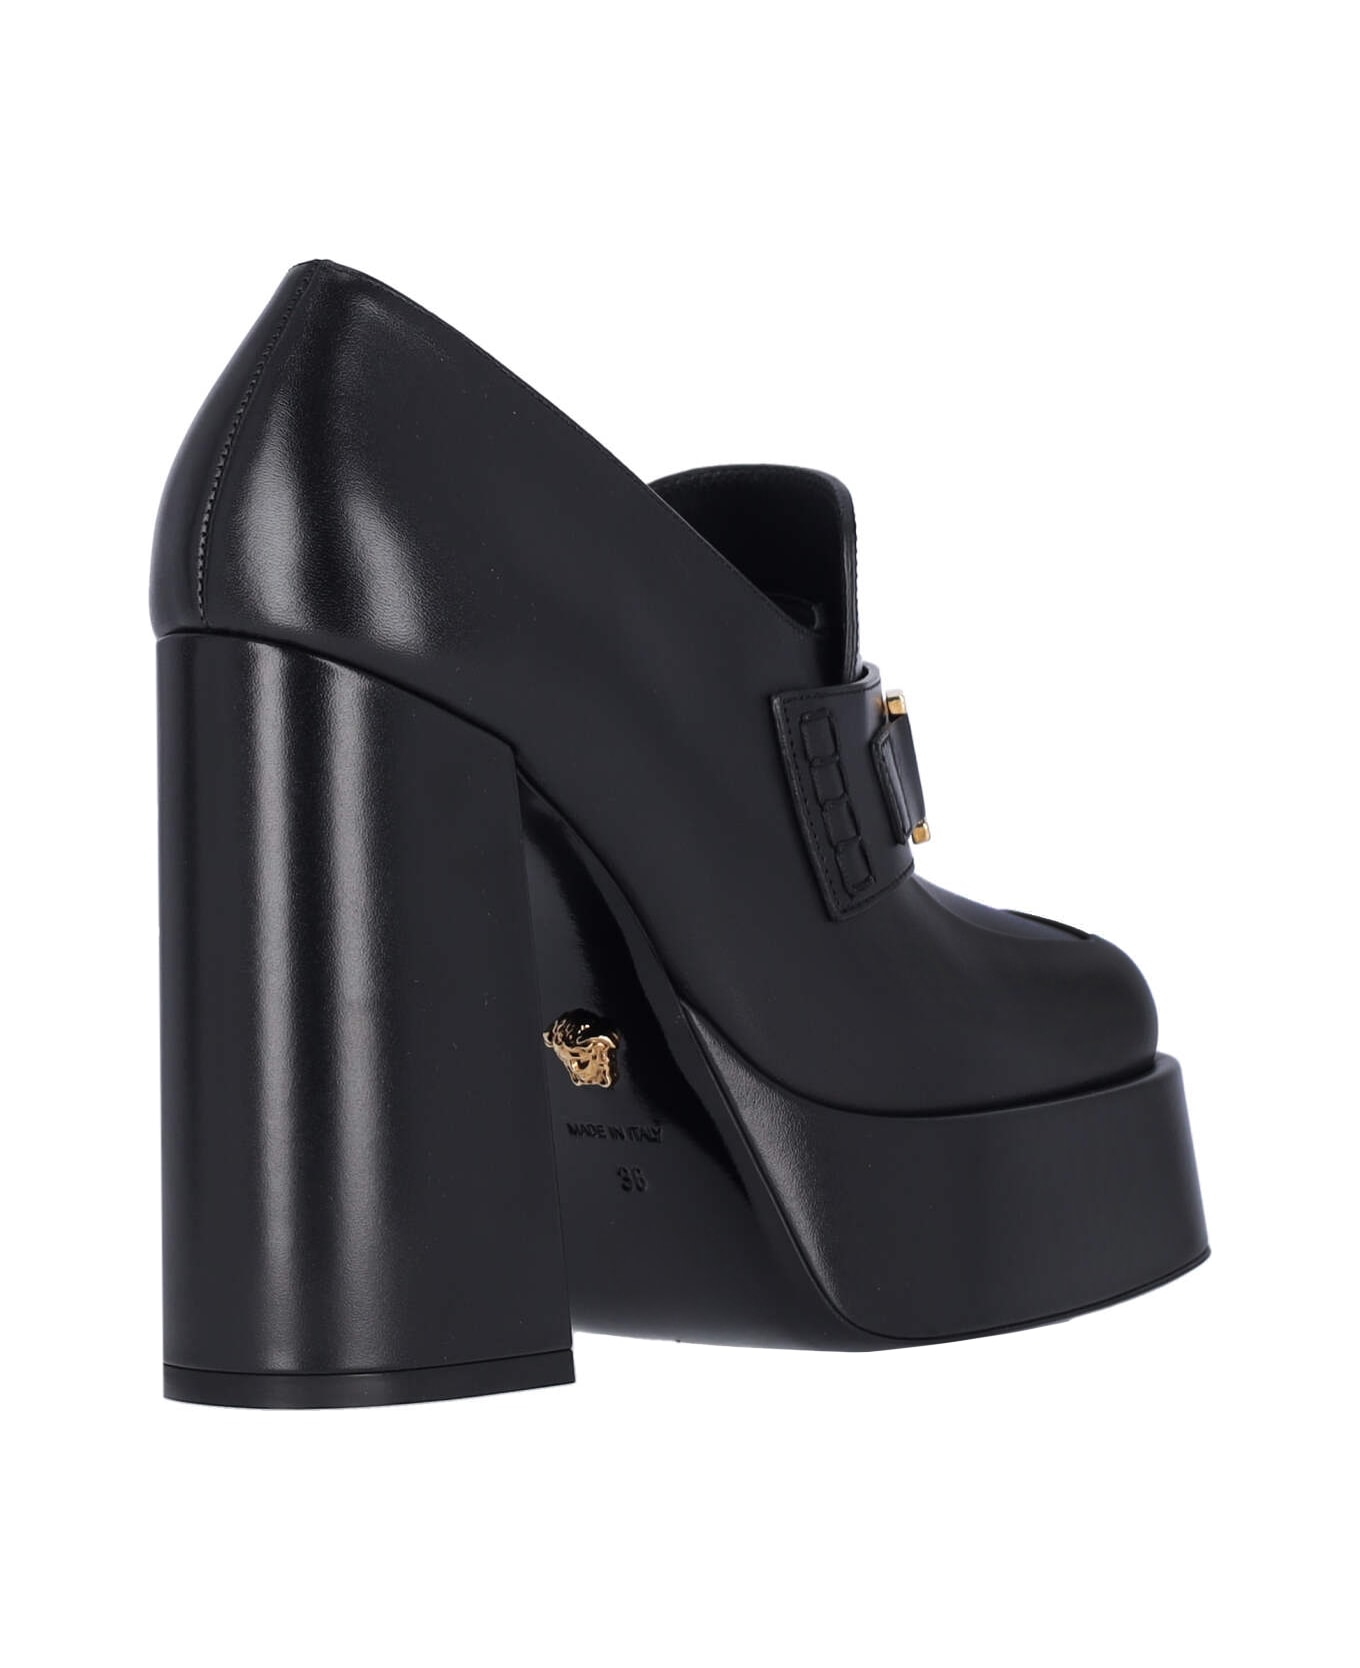 Versace Medusa Platform Loafers - Black  